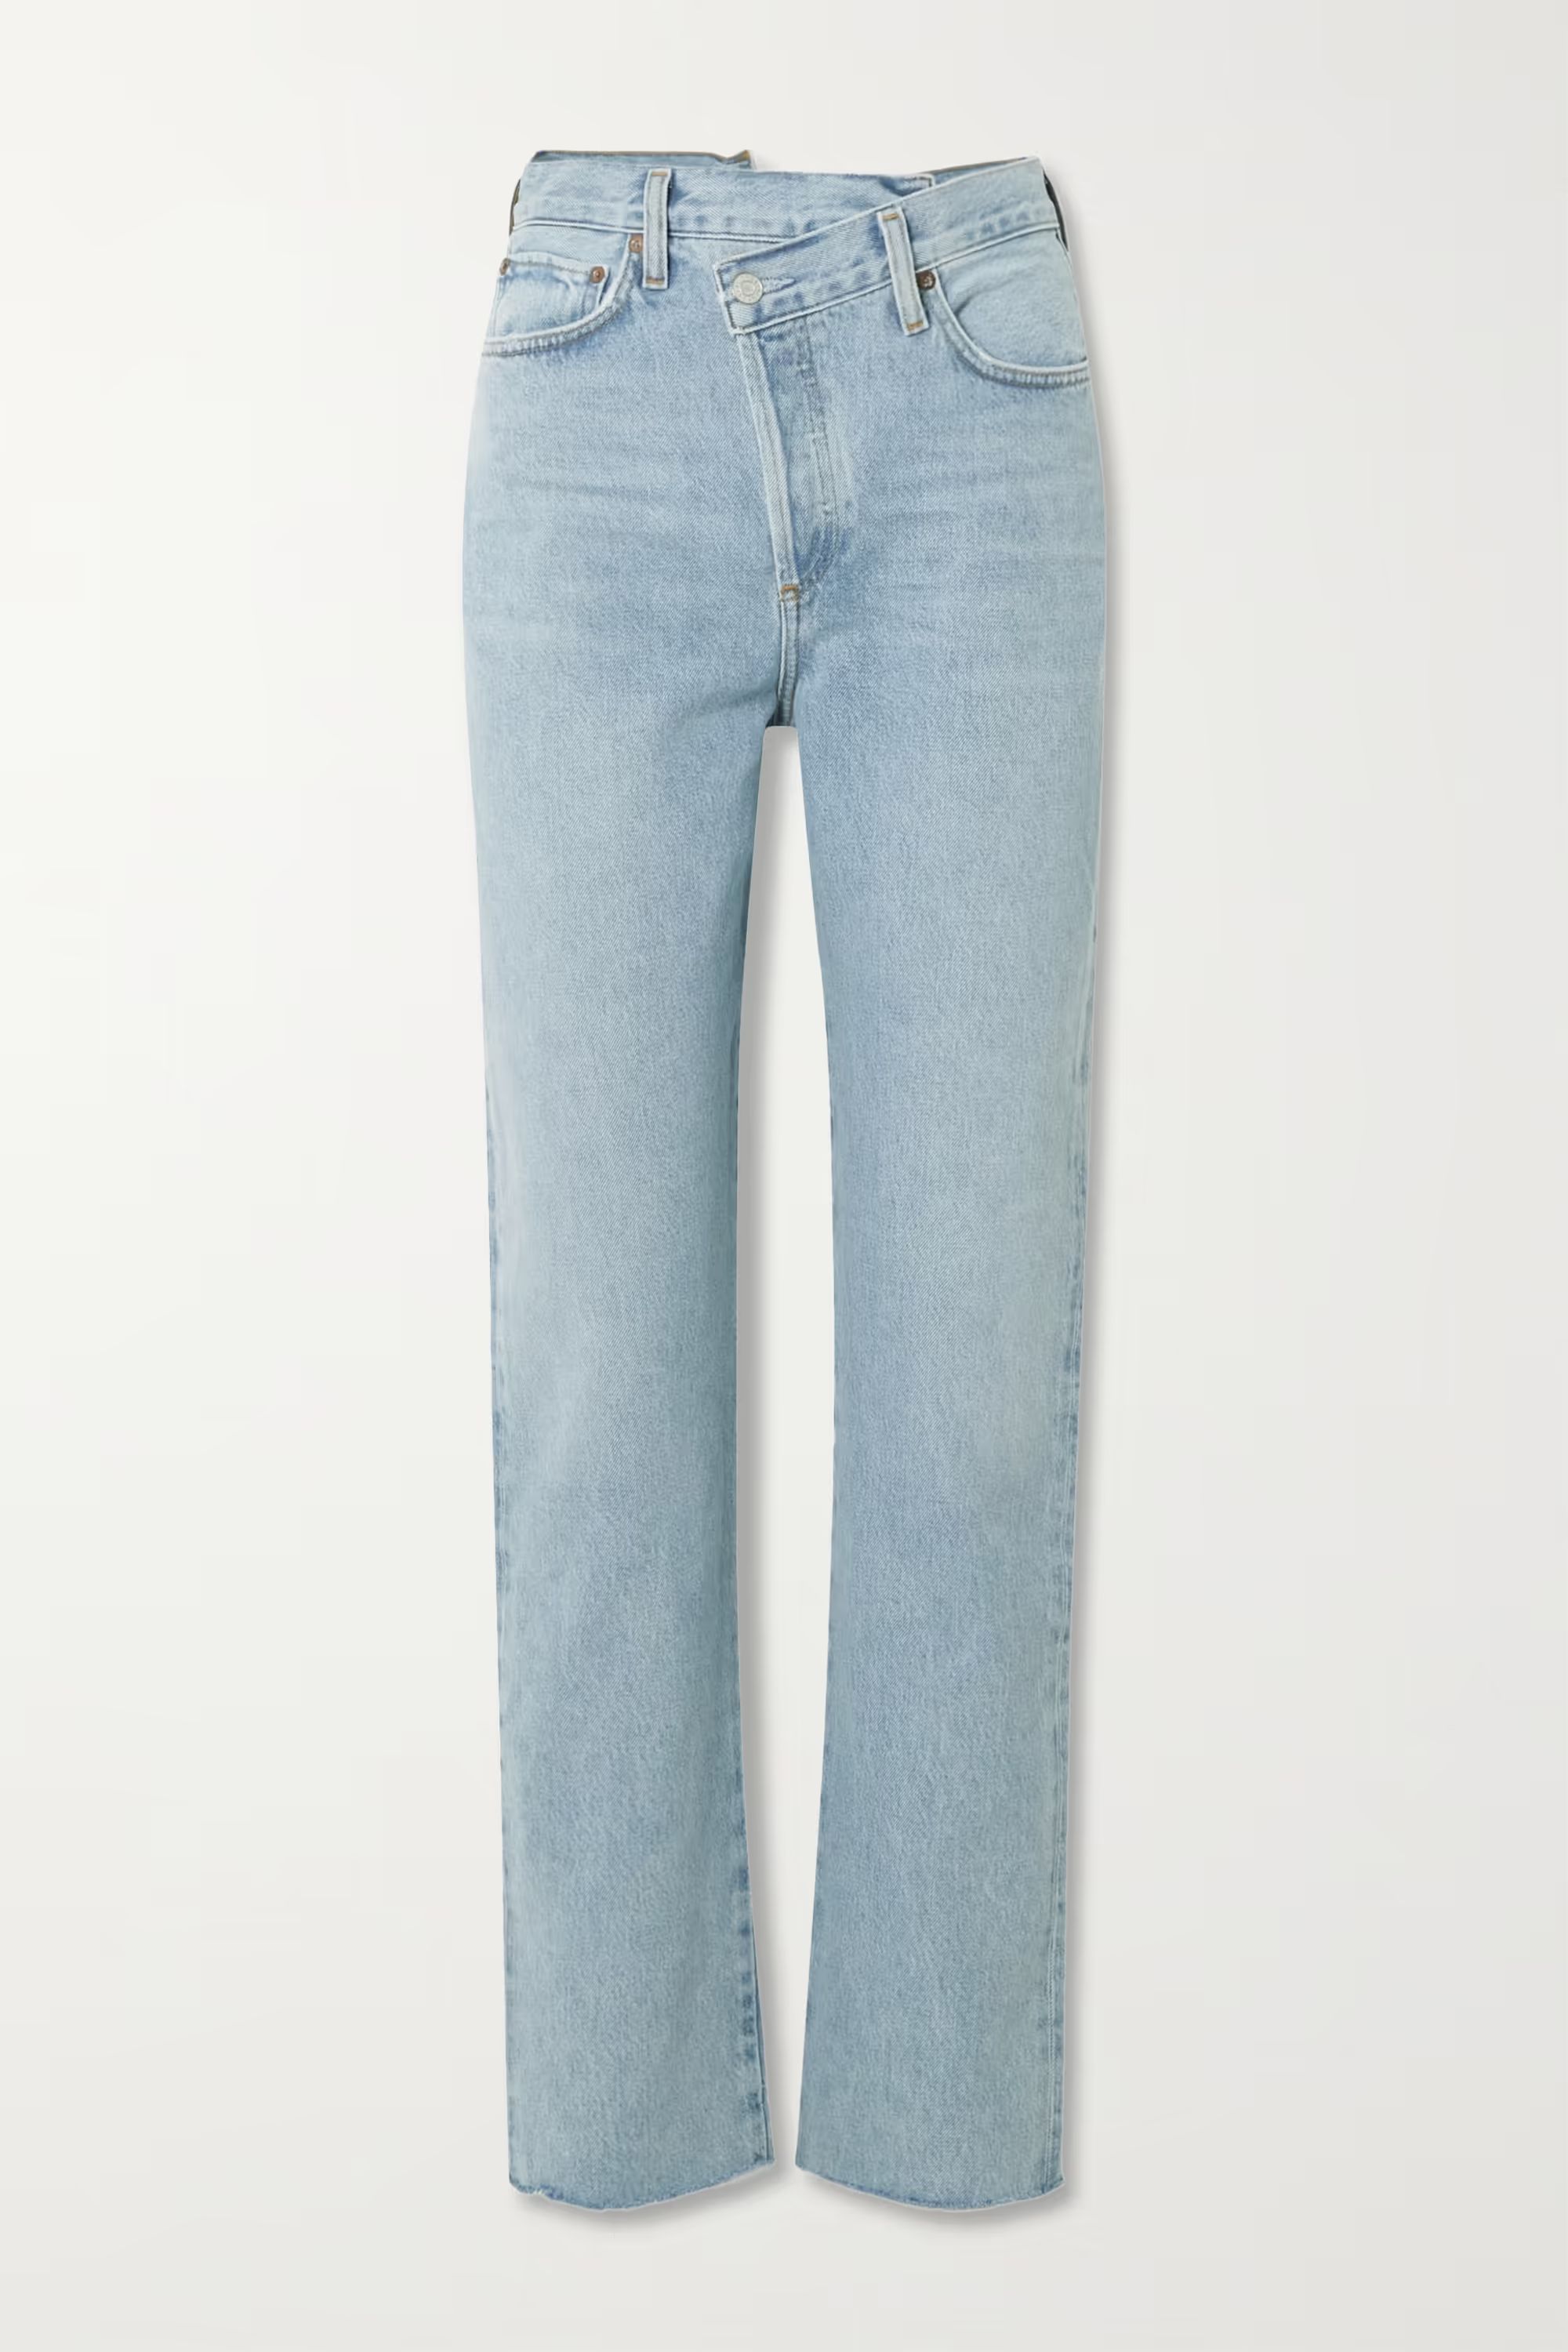 AGOLDECriss Cross frayed high-rise straight-leg organic jeans | NET-A-PORTER (UK & EU)